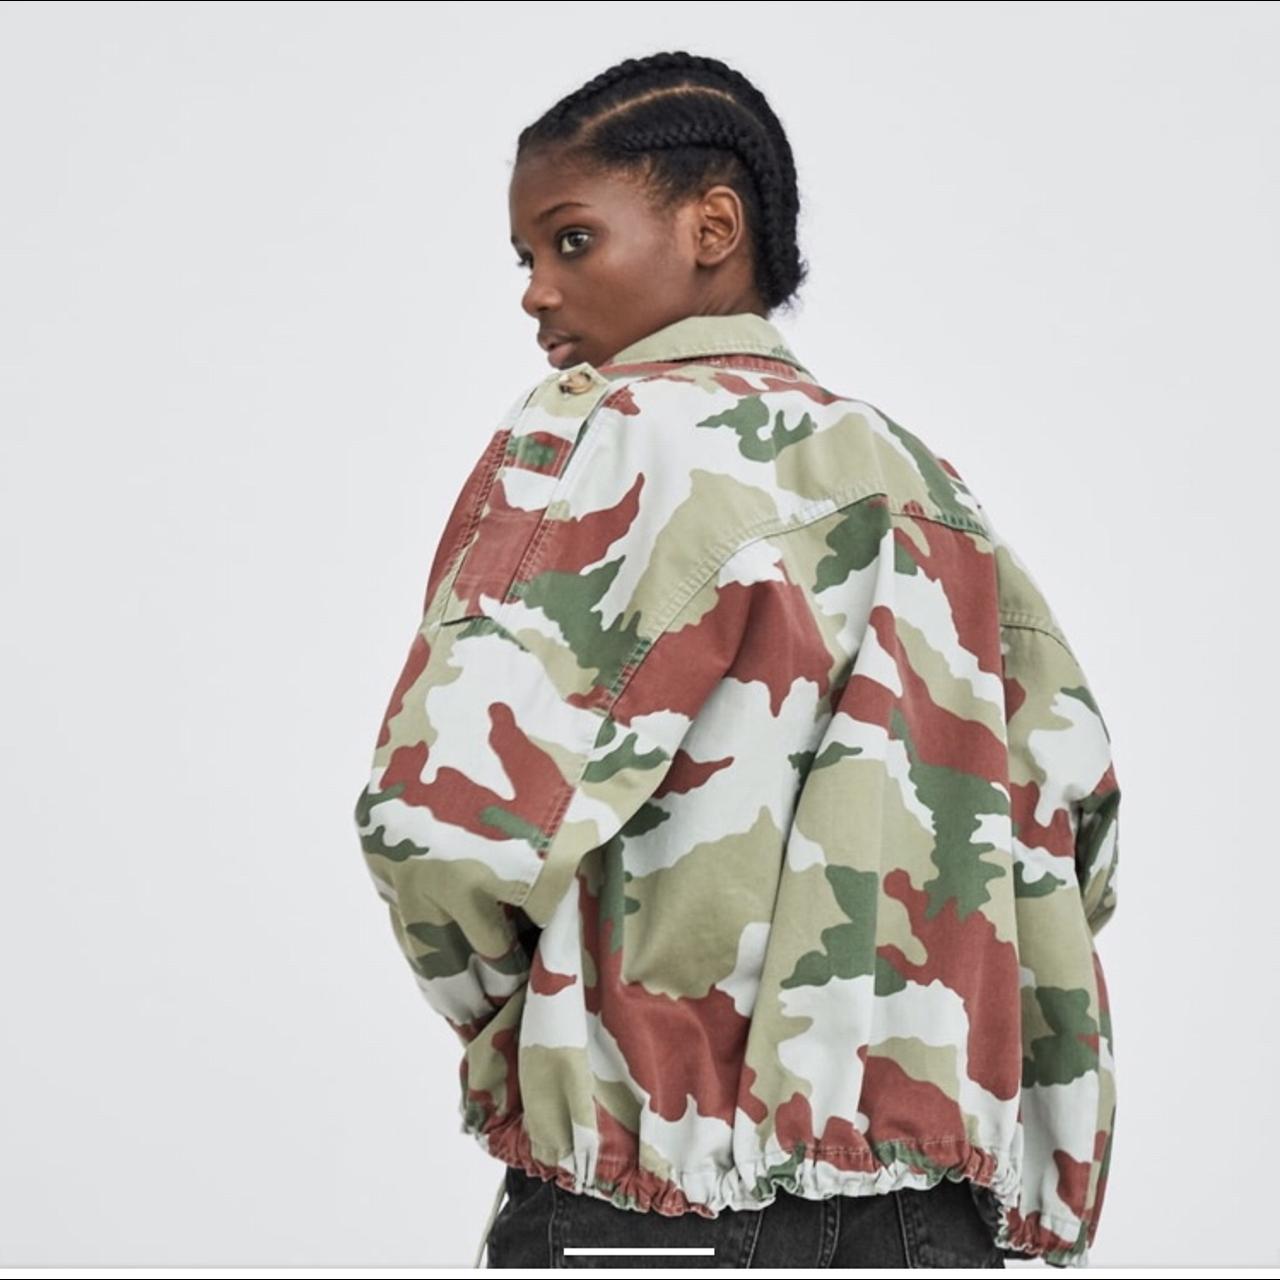 stakåndet Håbefuld Skaldet Zara camouflage jacket Worn once 🤩 Size M Medium... - Depop